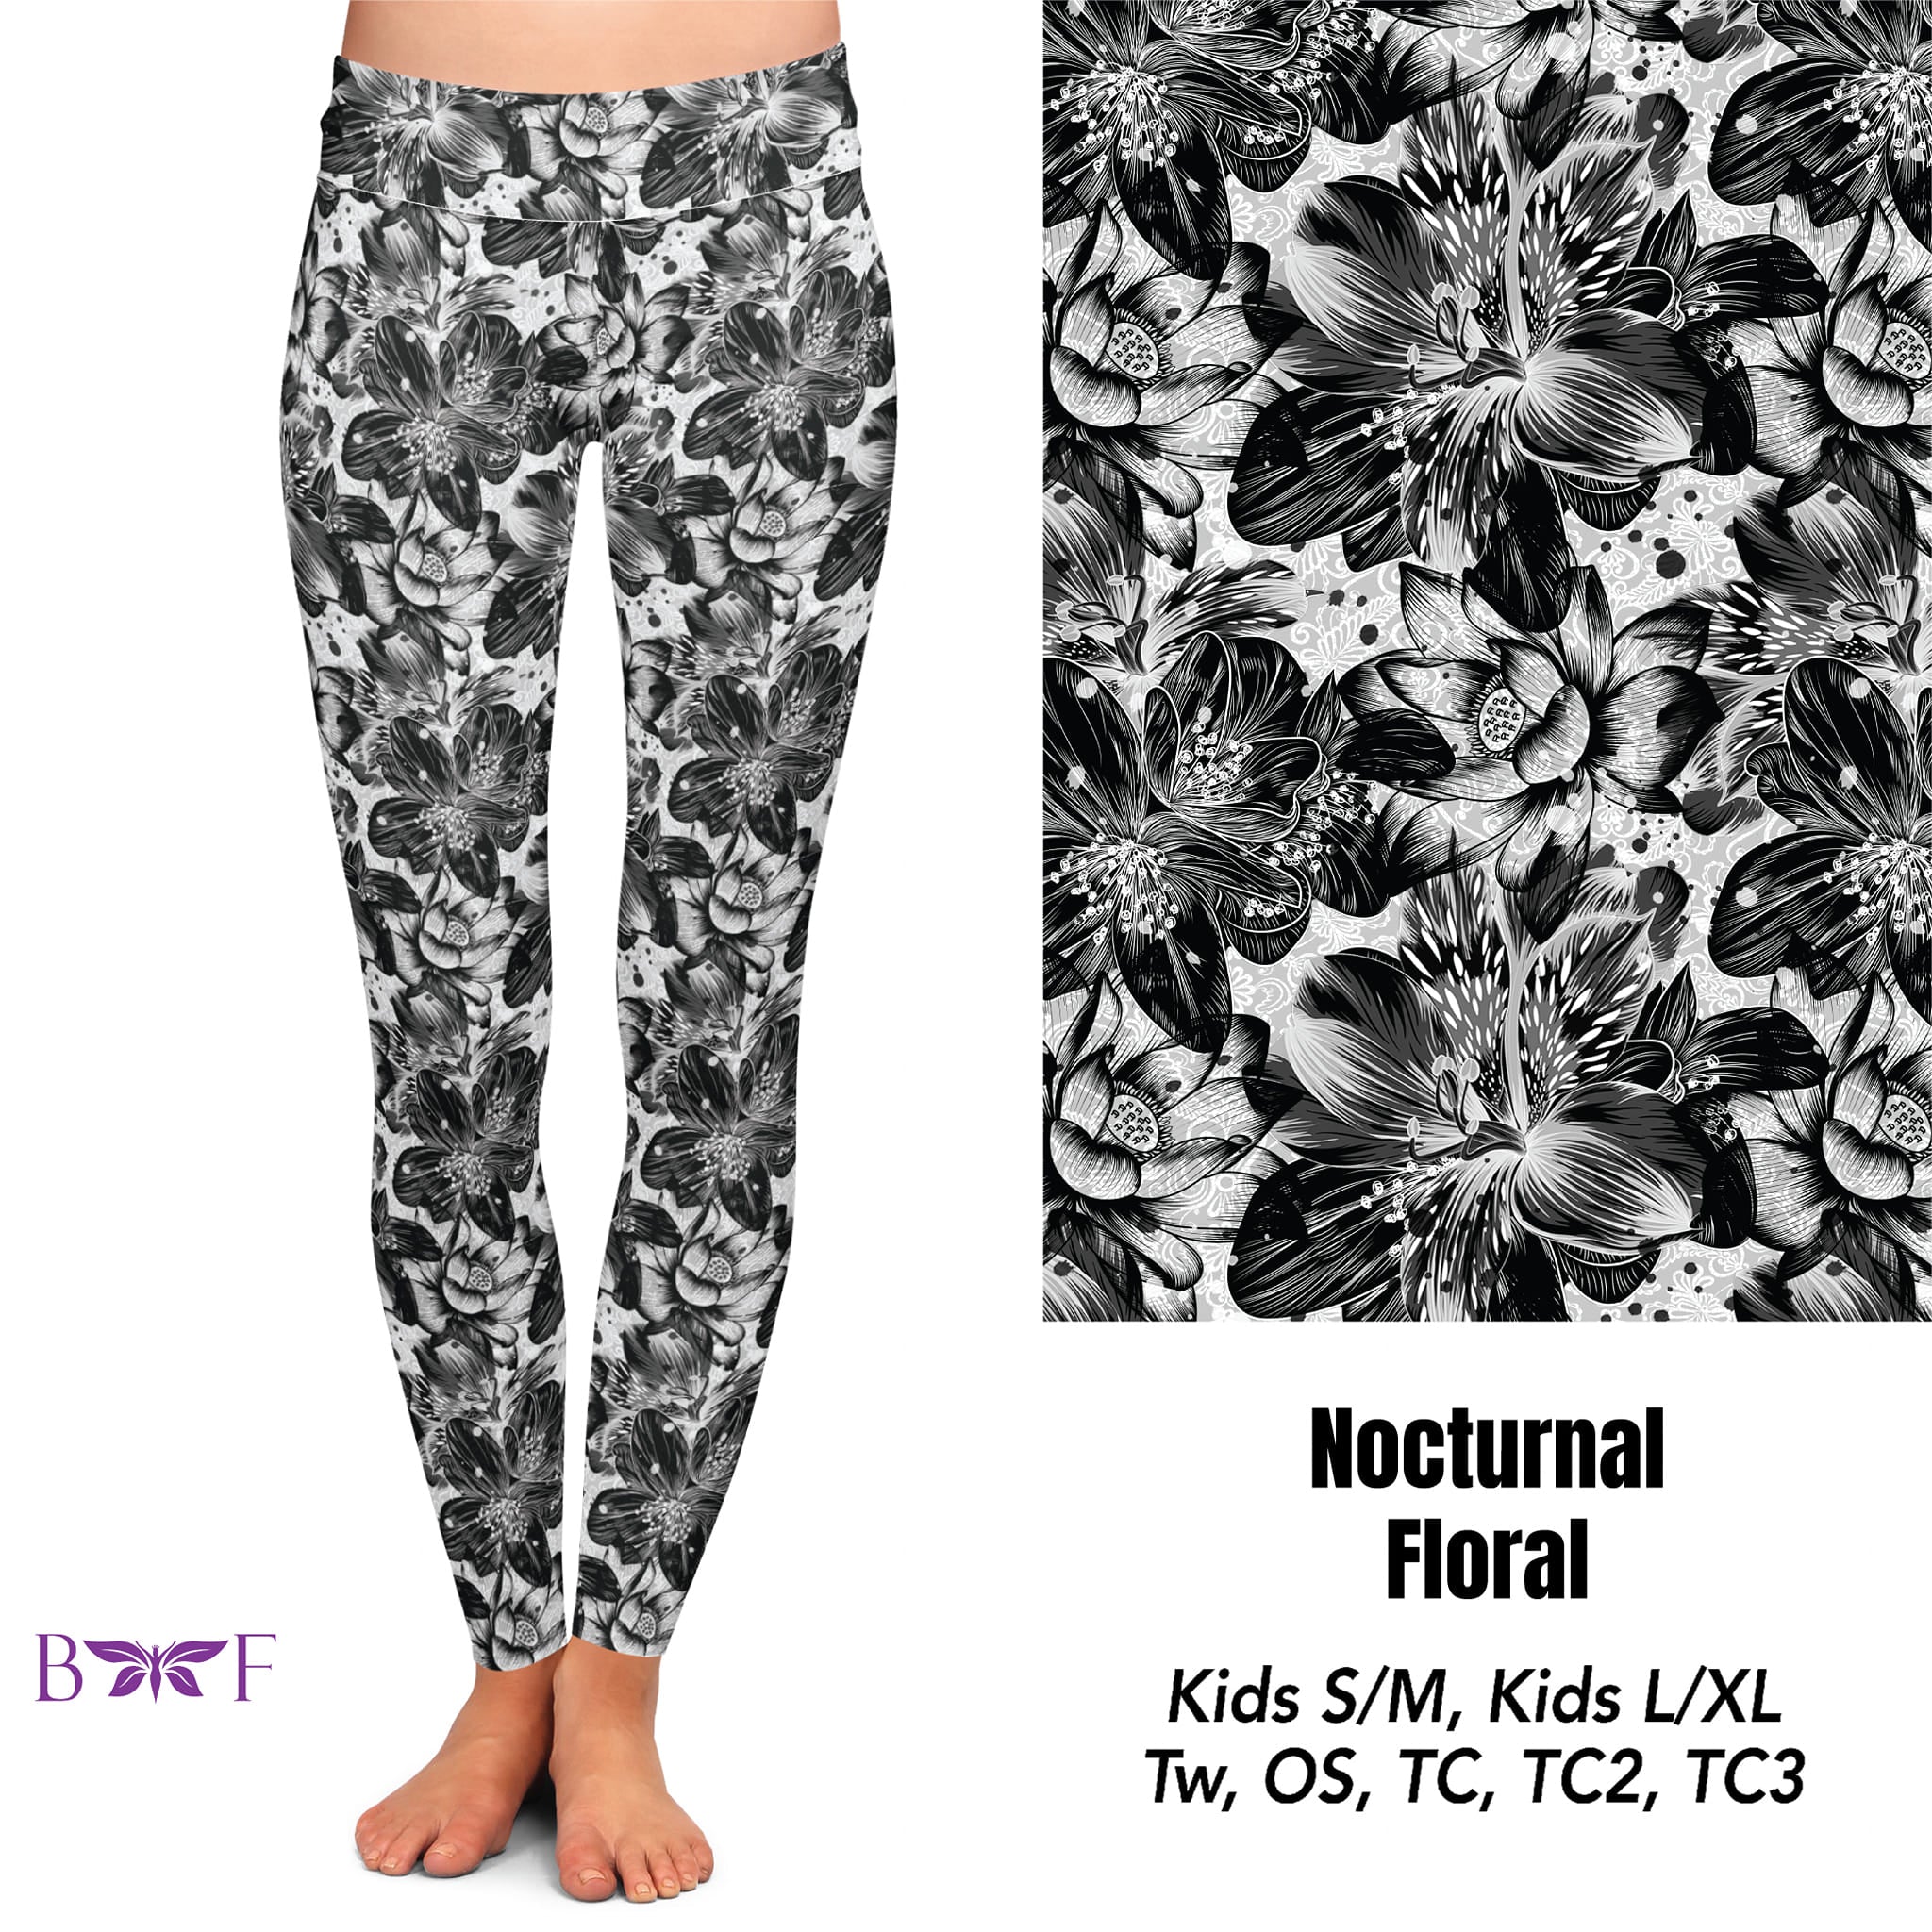 Nocturnal Floral Capris and Capri Lounge Pants